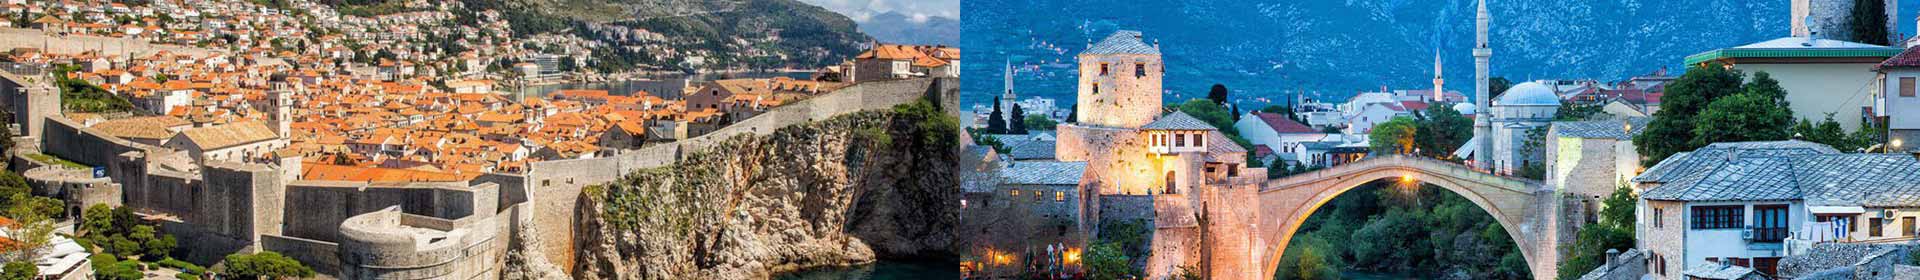 Split - Dubrovnik via Mostar & Sarajevo tour